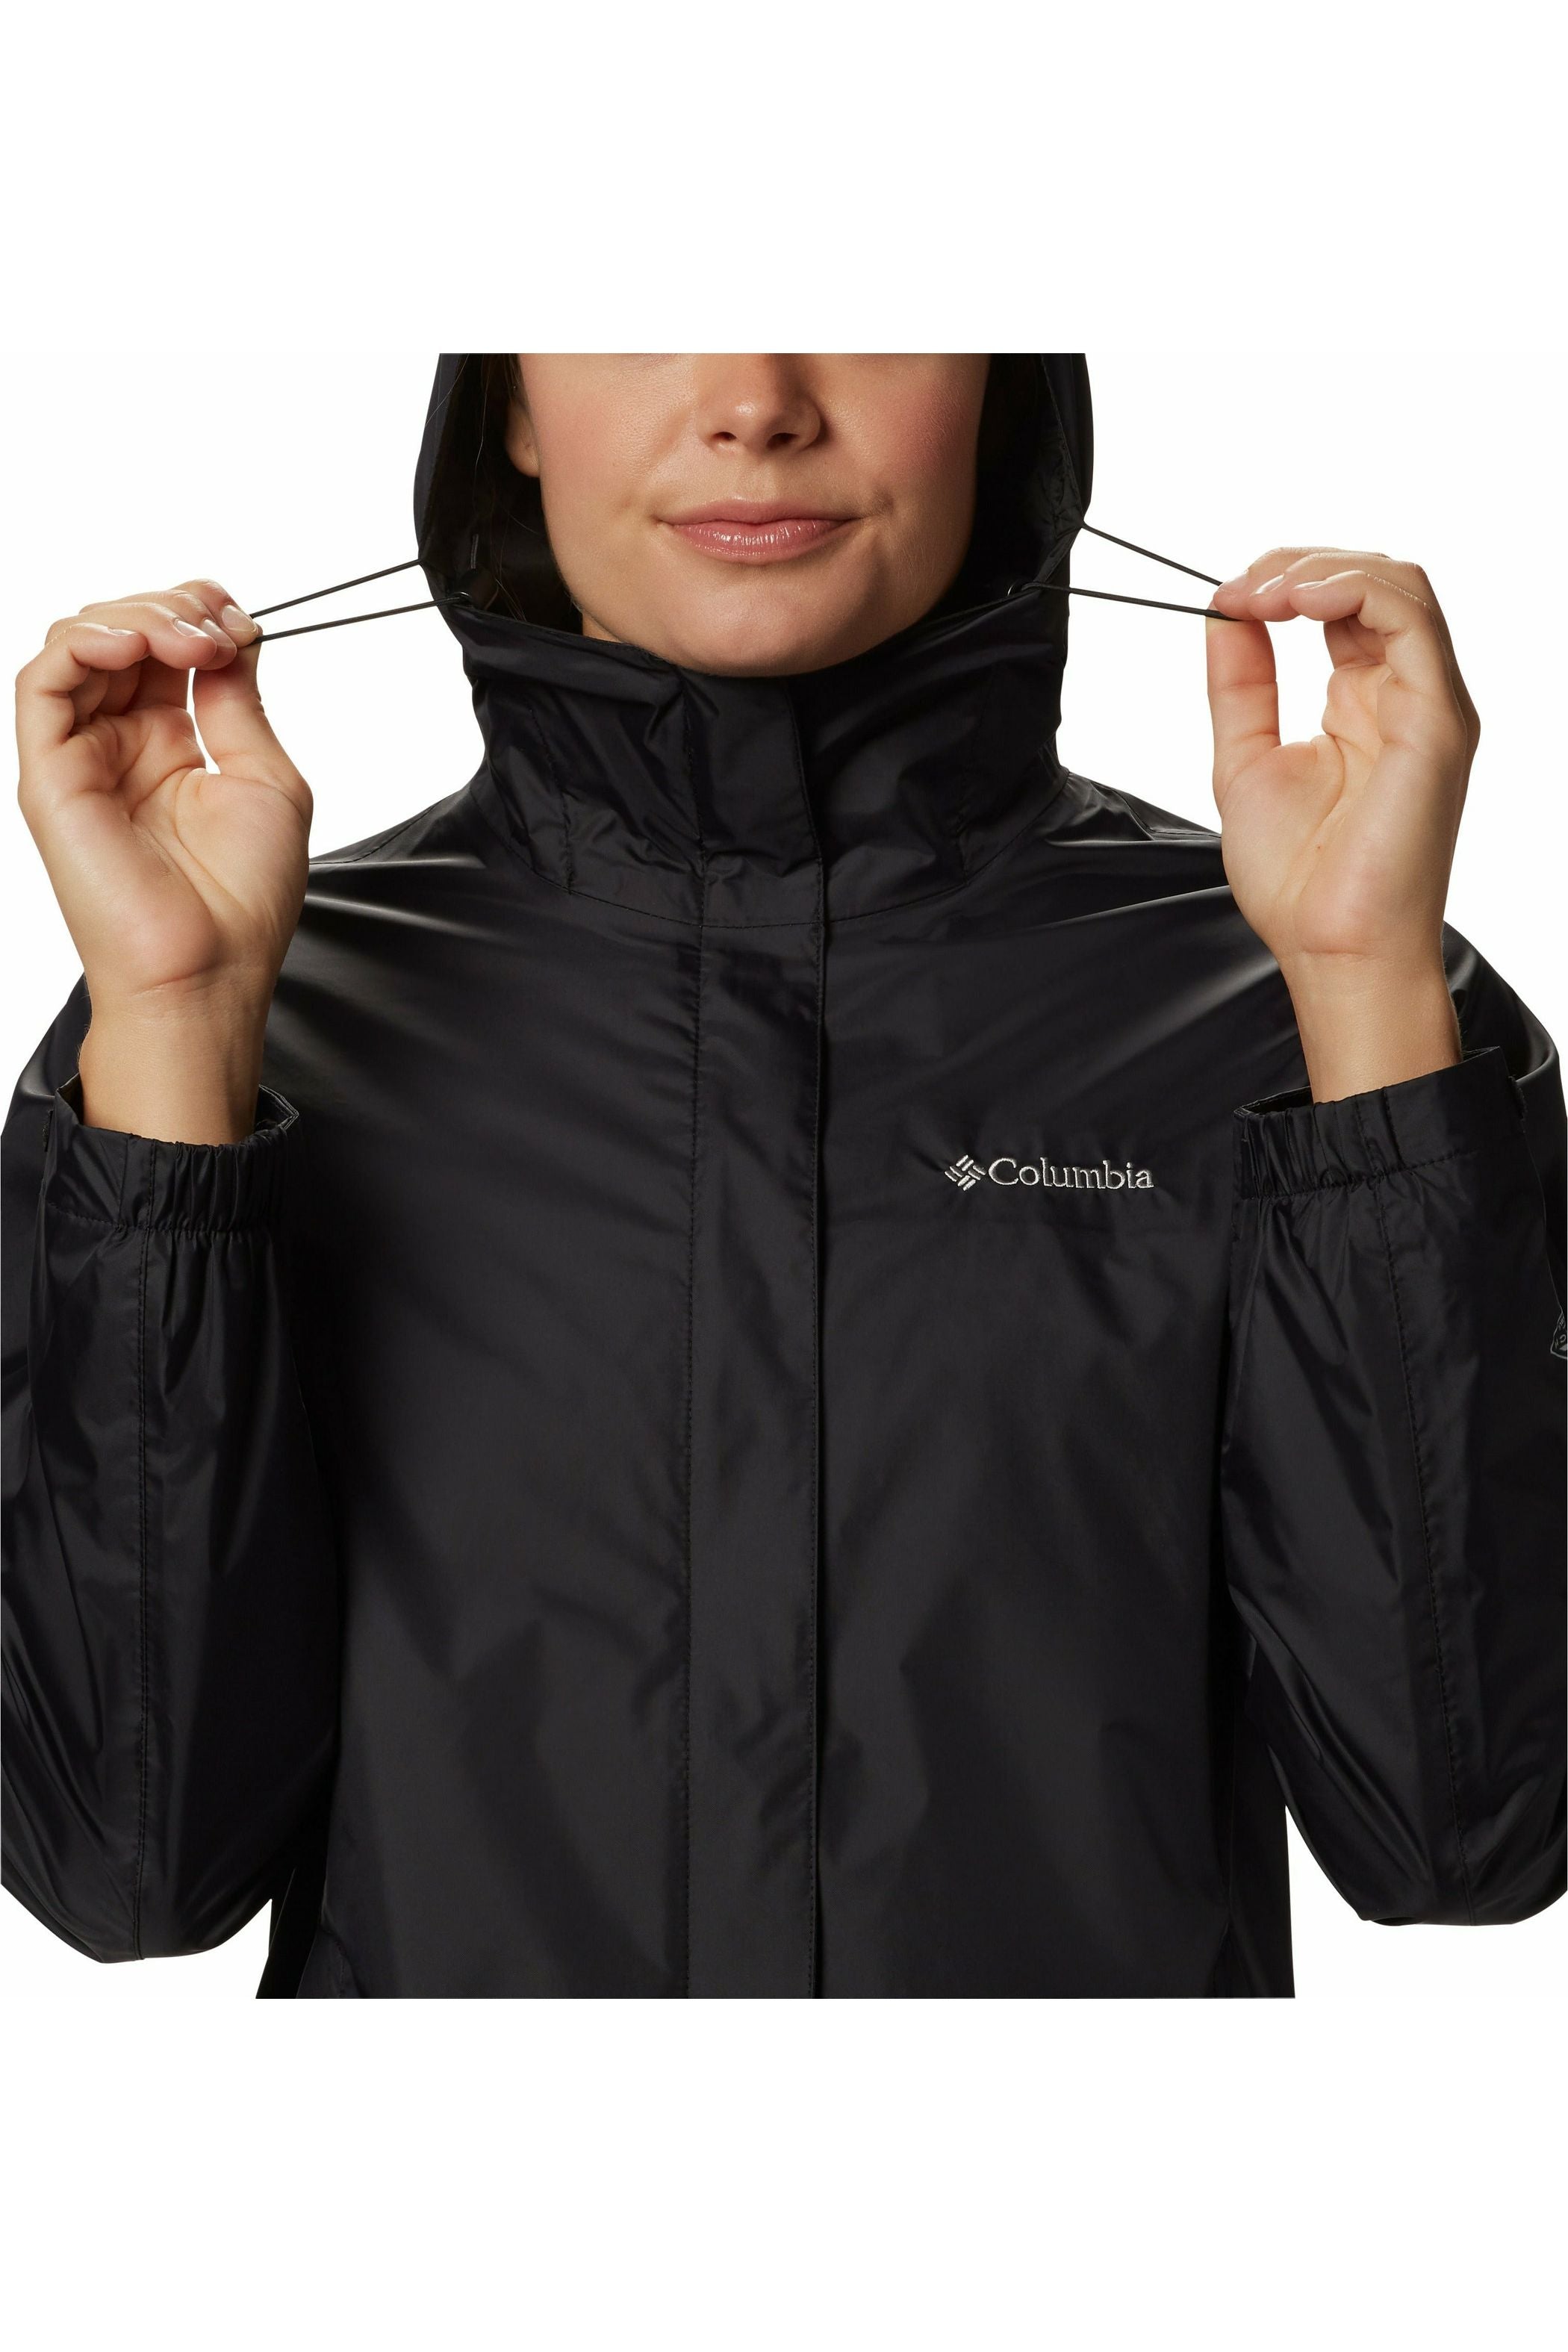 Columbia Arcadia Waterproof Jacket - Style 1534111010, front hood